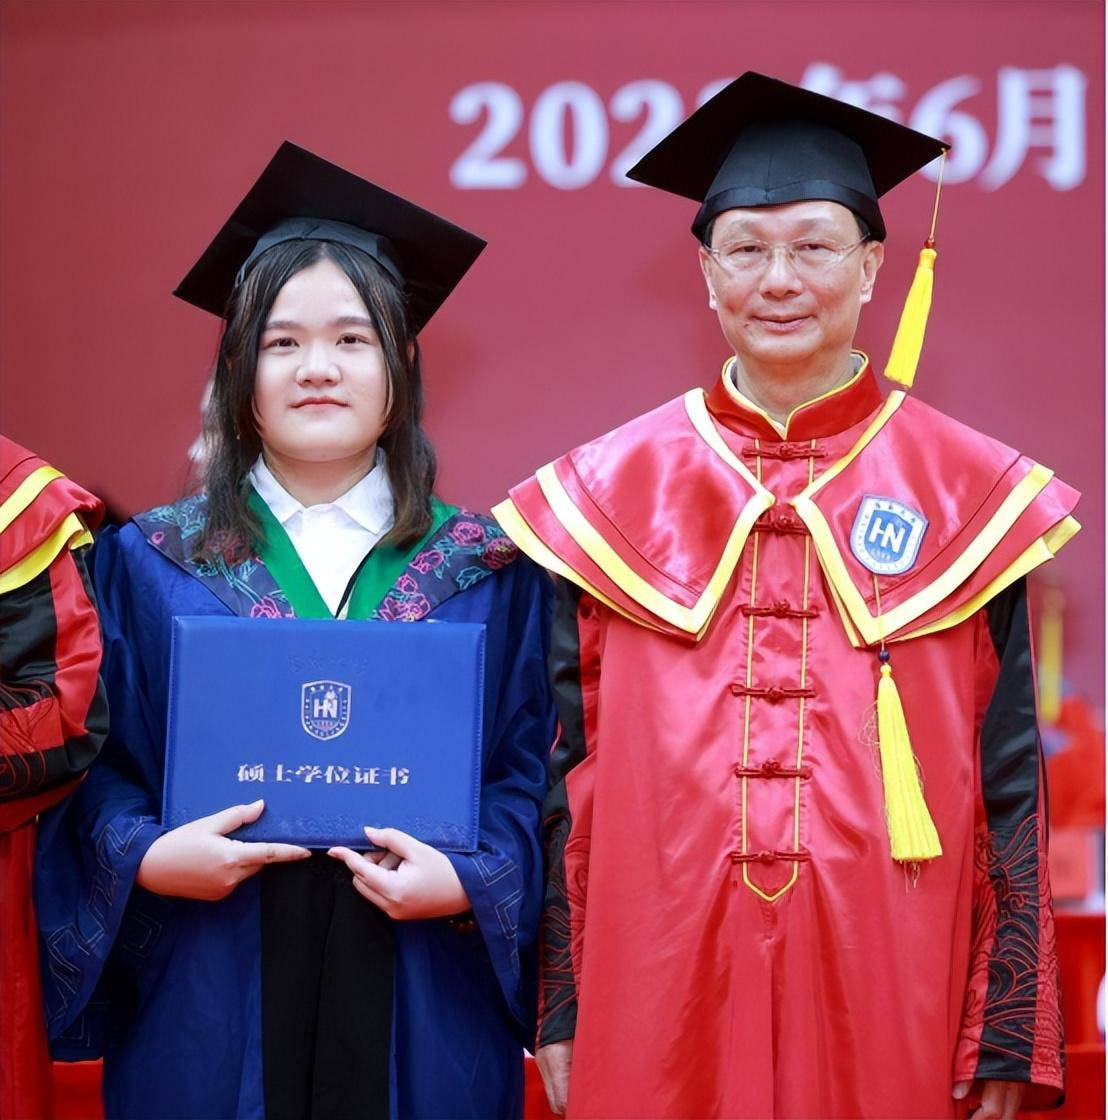 海南大学举行2023年毕业典礼暨学位授予仪式:拨穗,礼成,再出发